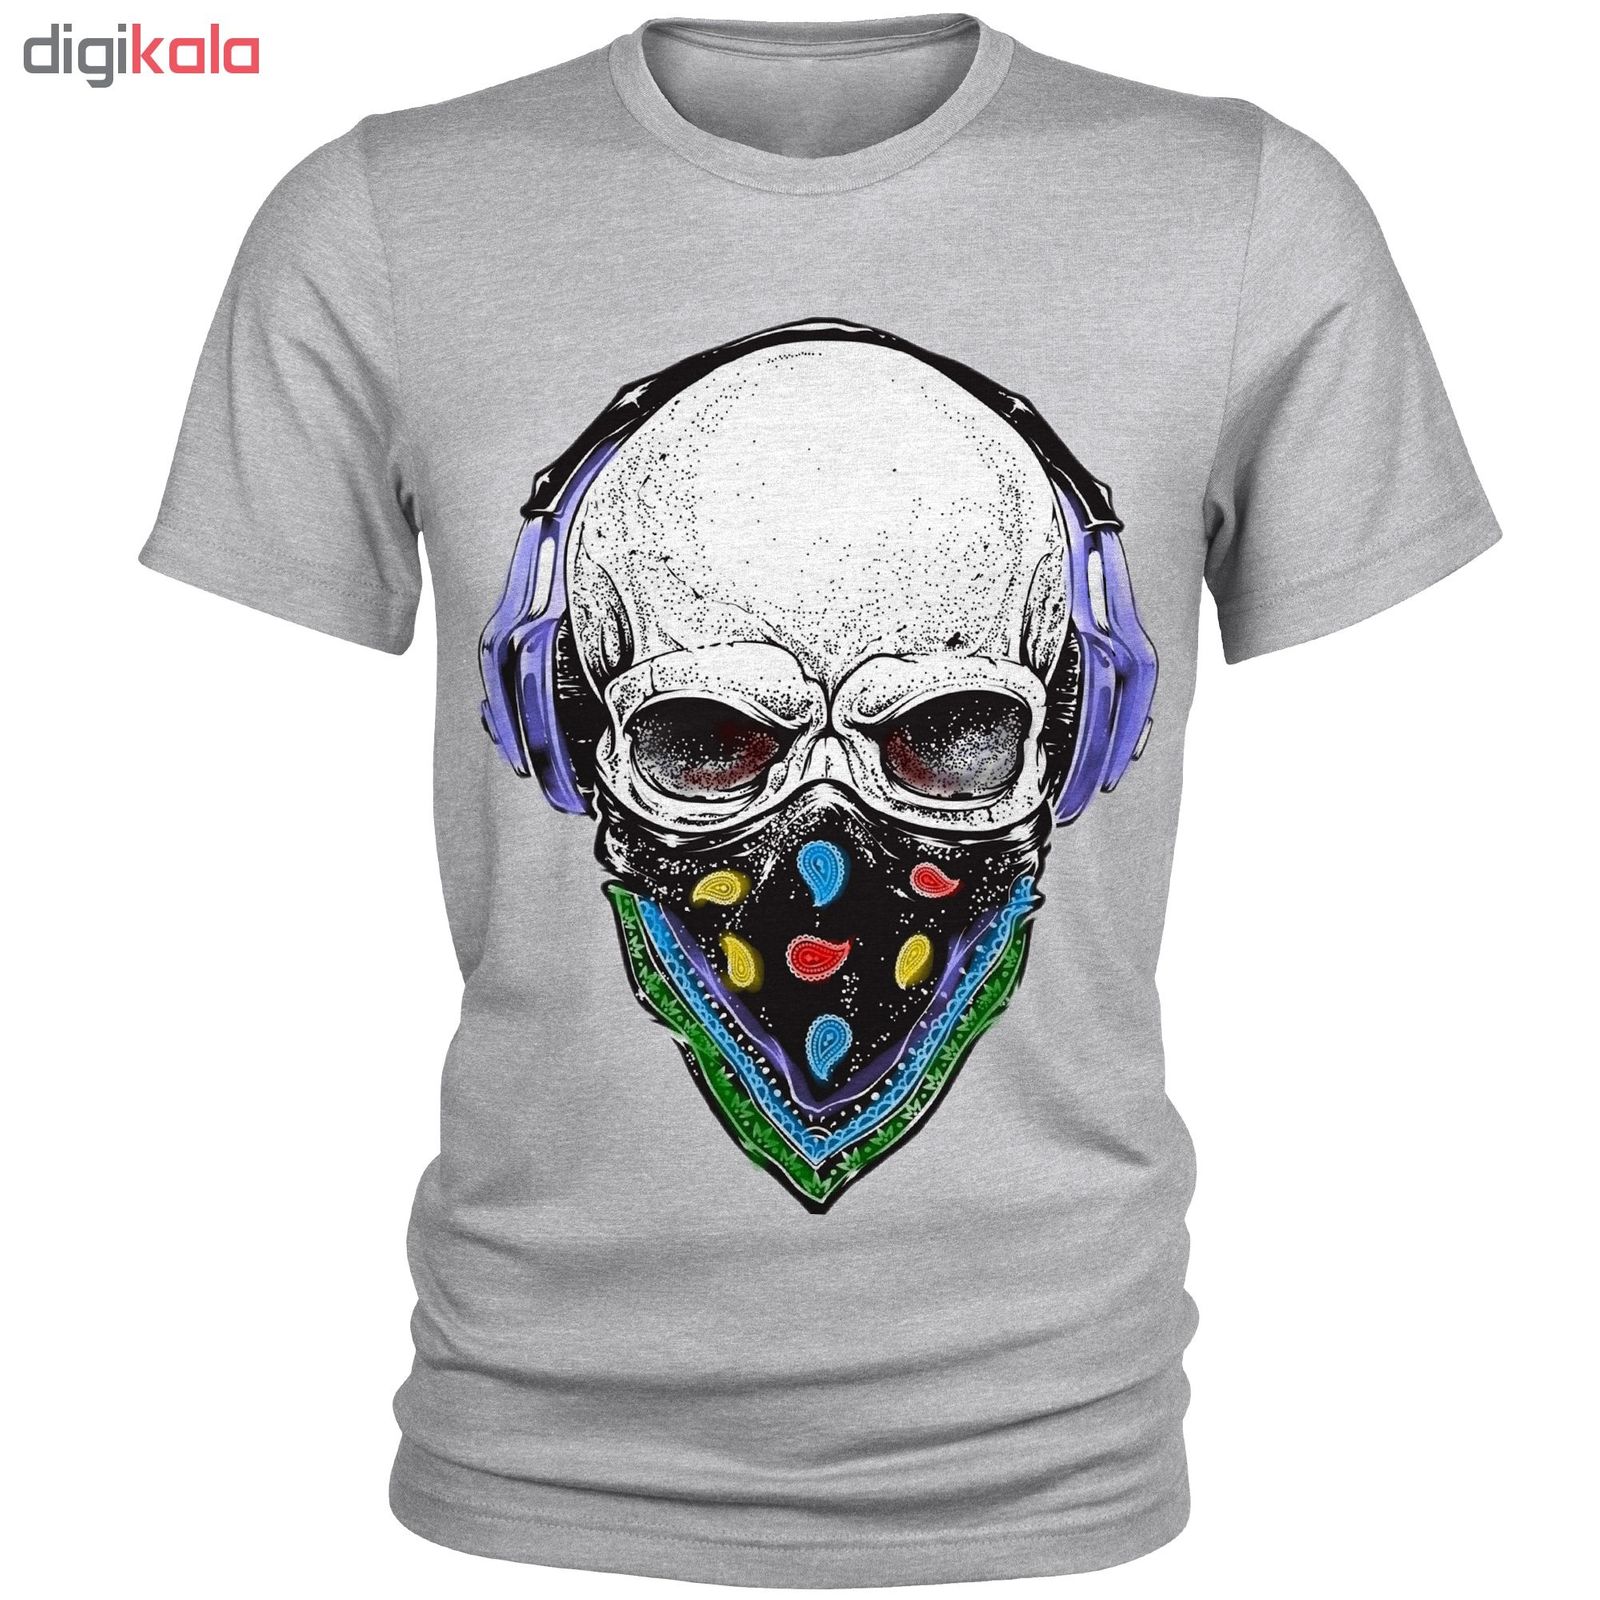 تی شرت مردانه مدل Skull کد A109